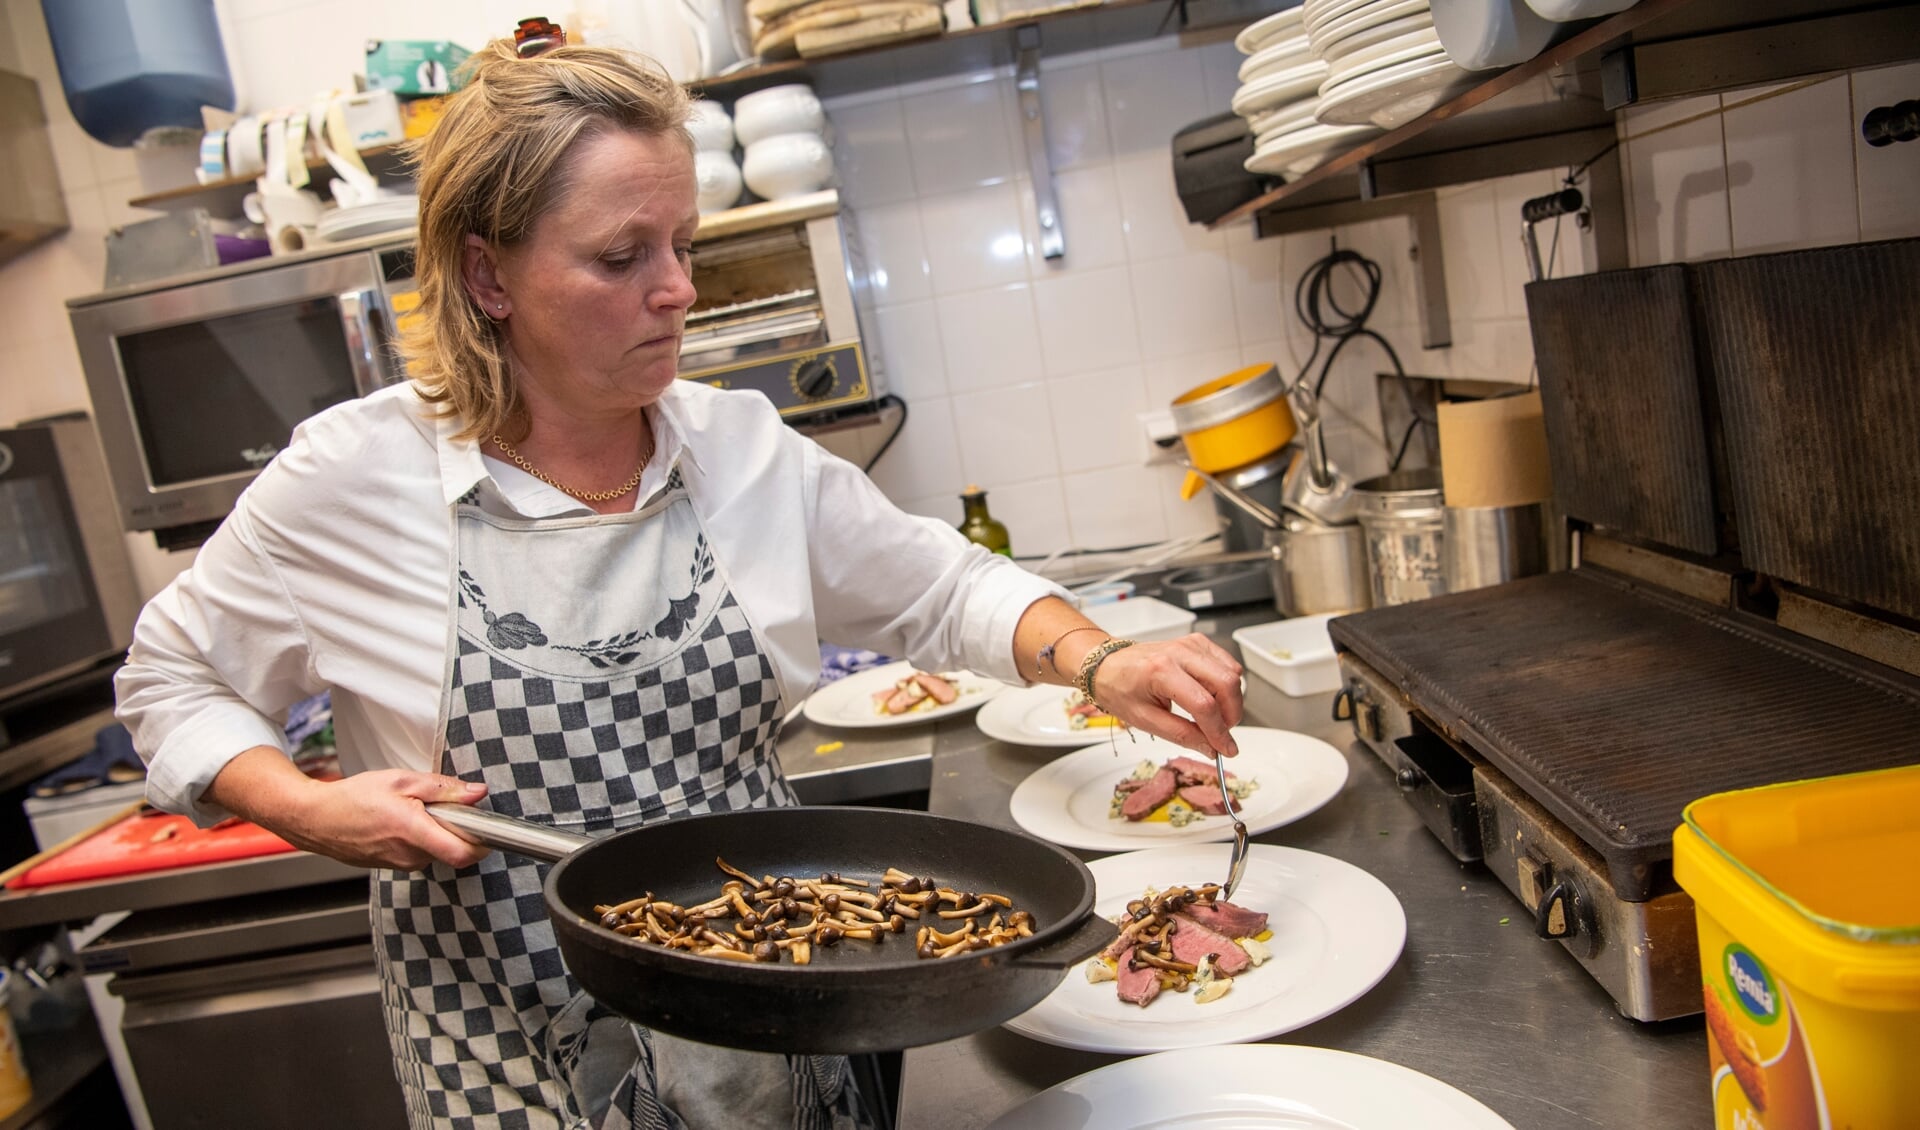 Nynke kookt wekelijks op zondg in grand café Halewijn een eerlijk diner van 3 gangen.